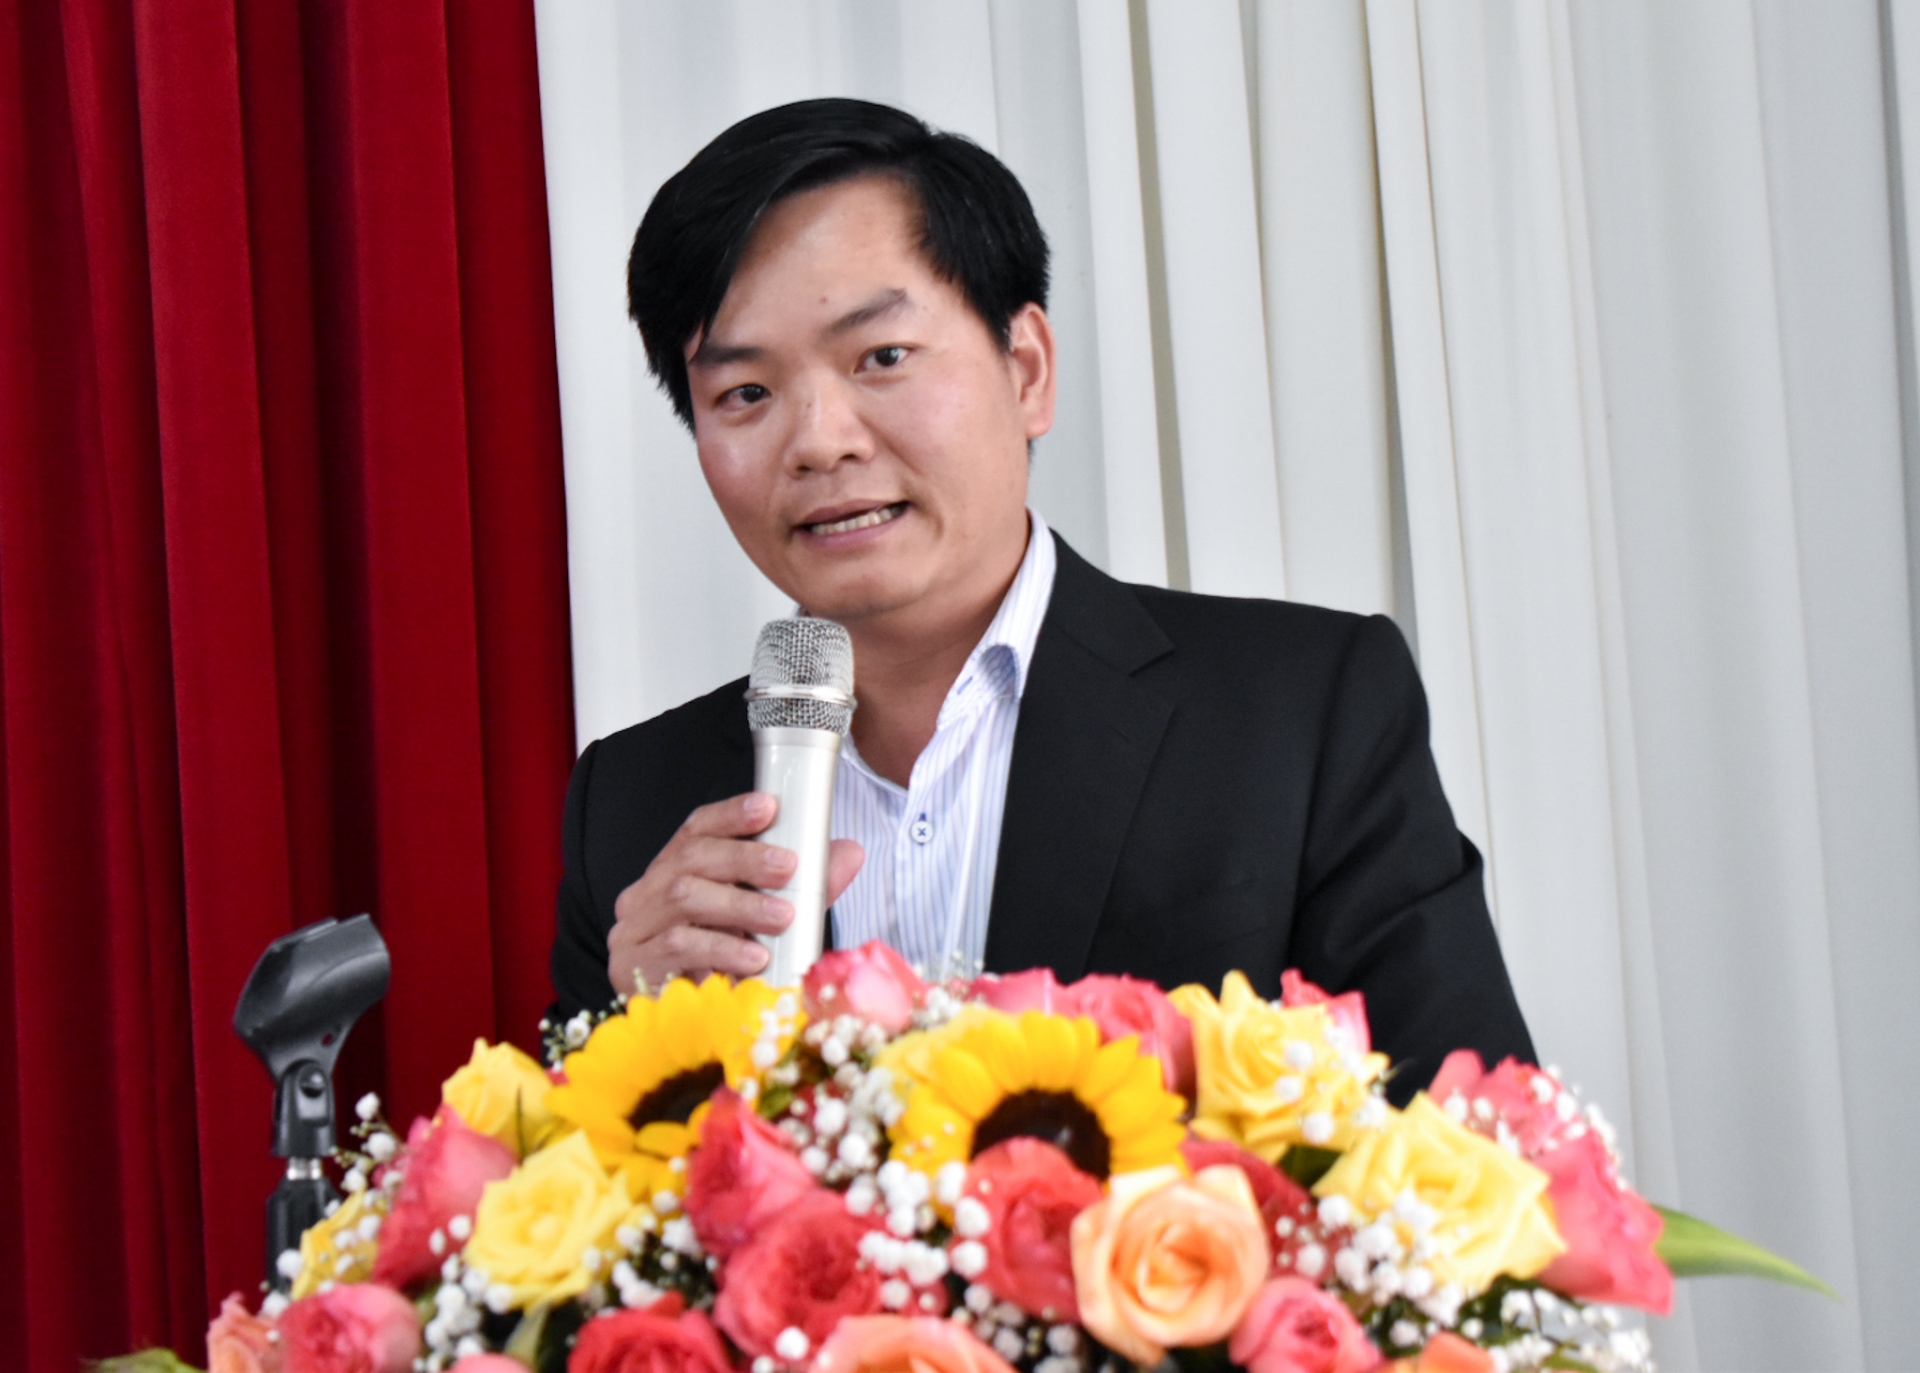 Phó Hiệu trưởng Trường Đại học Đà Lạt Mai Minh Nhật,  trình bày tóm tắt Đề án thành lập Trung tâm đào tạo chất lượng cao